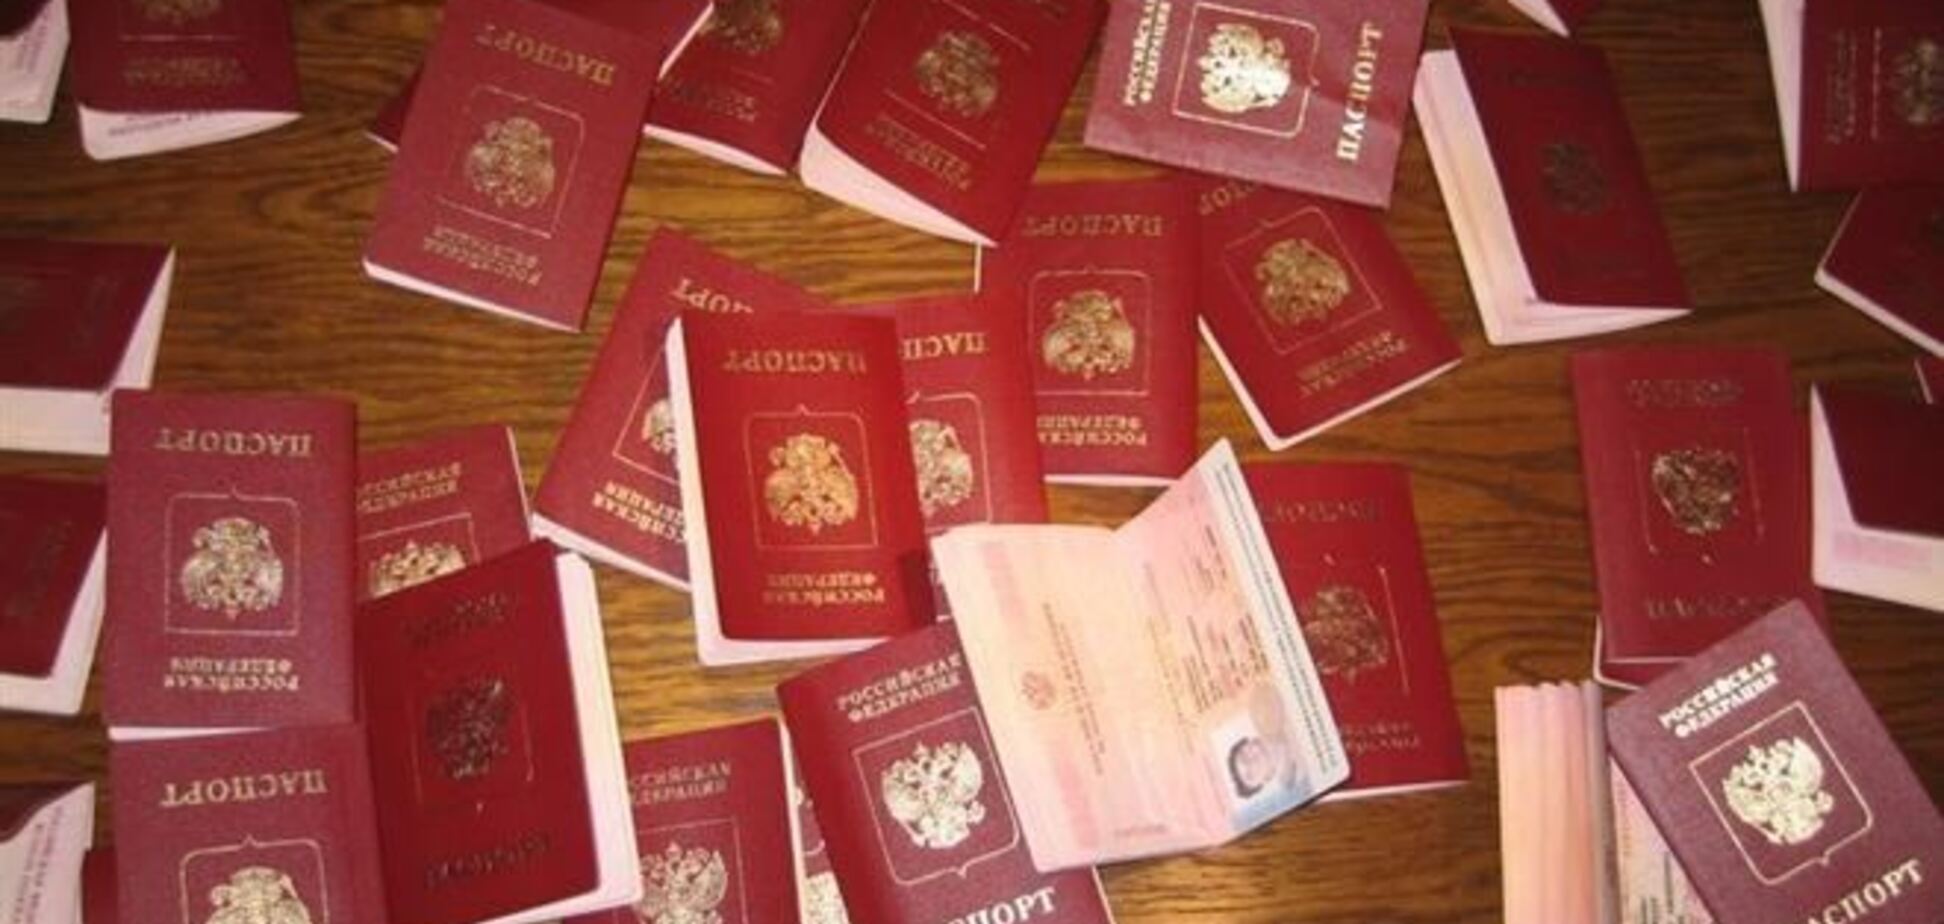 З виданими кримчанам паспортами РФ можна буде виїхати лише до Росії - політолог